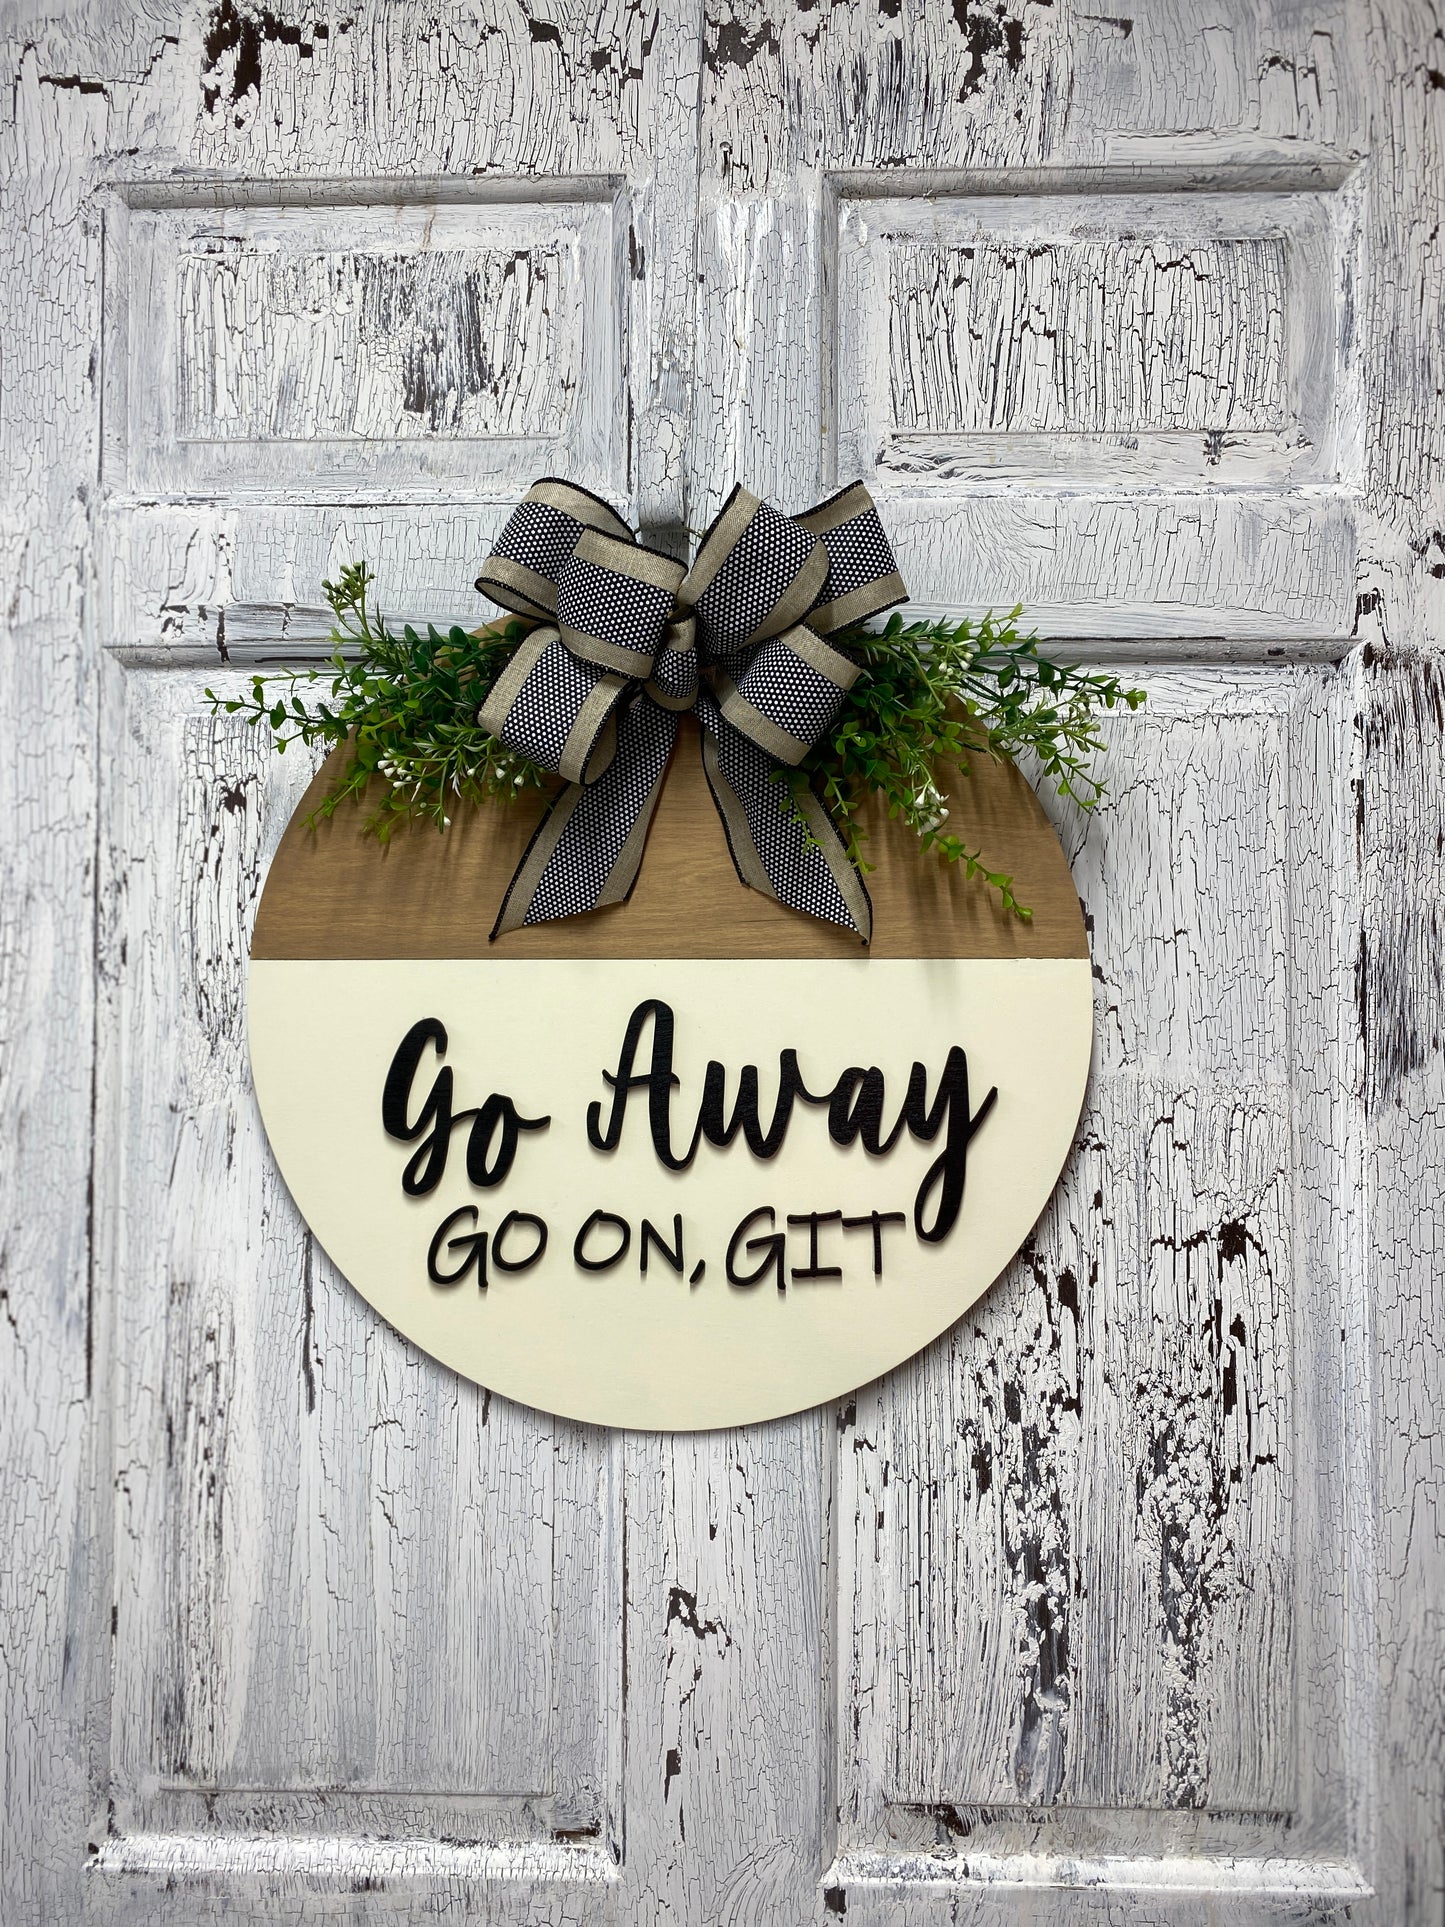 Go Away Go On Git Door Hanger Funny Greeting Wooden Door Wreath